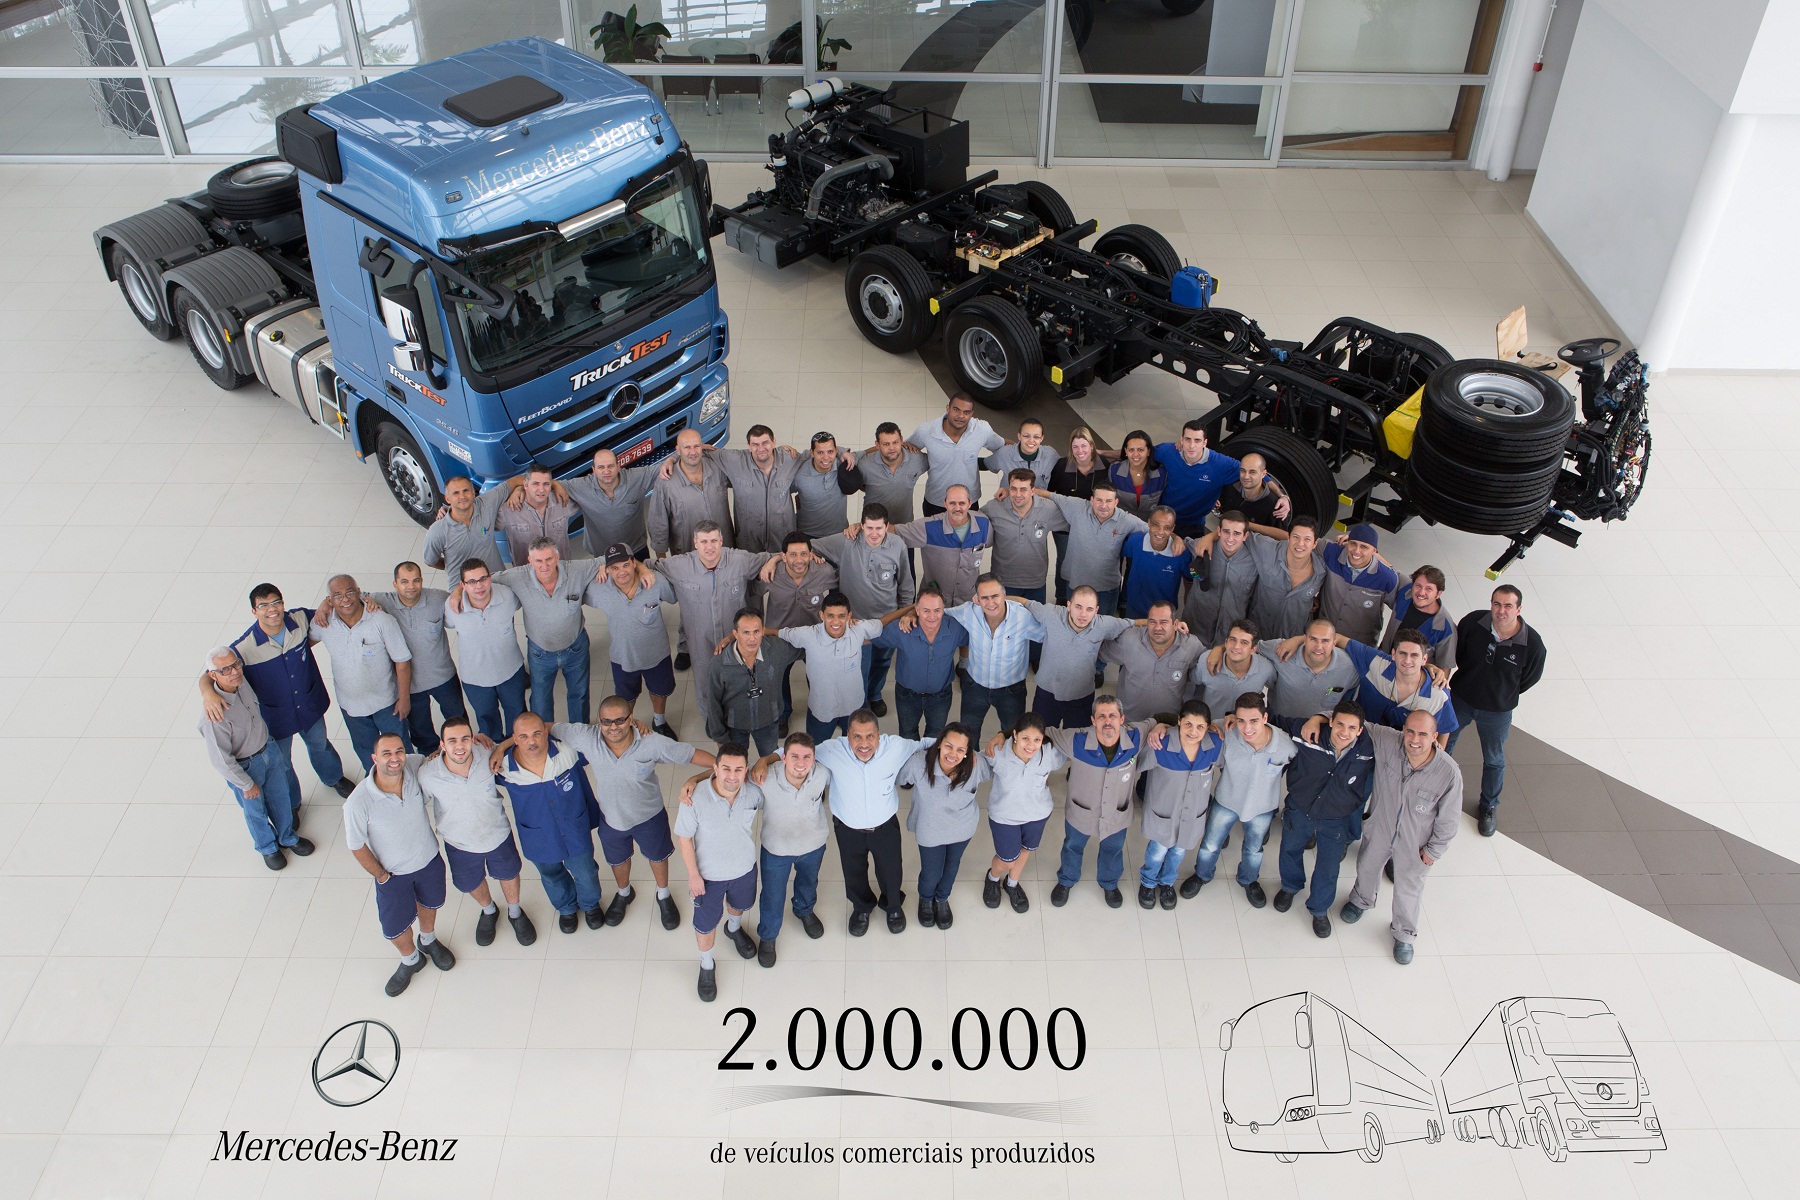 Mercedes-Benz alcança o marco histórico de 2.000.000 de veículos comerciais produzidos no Brasil